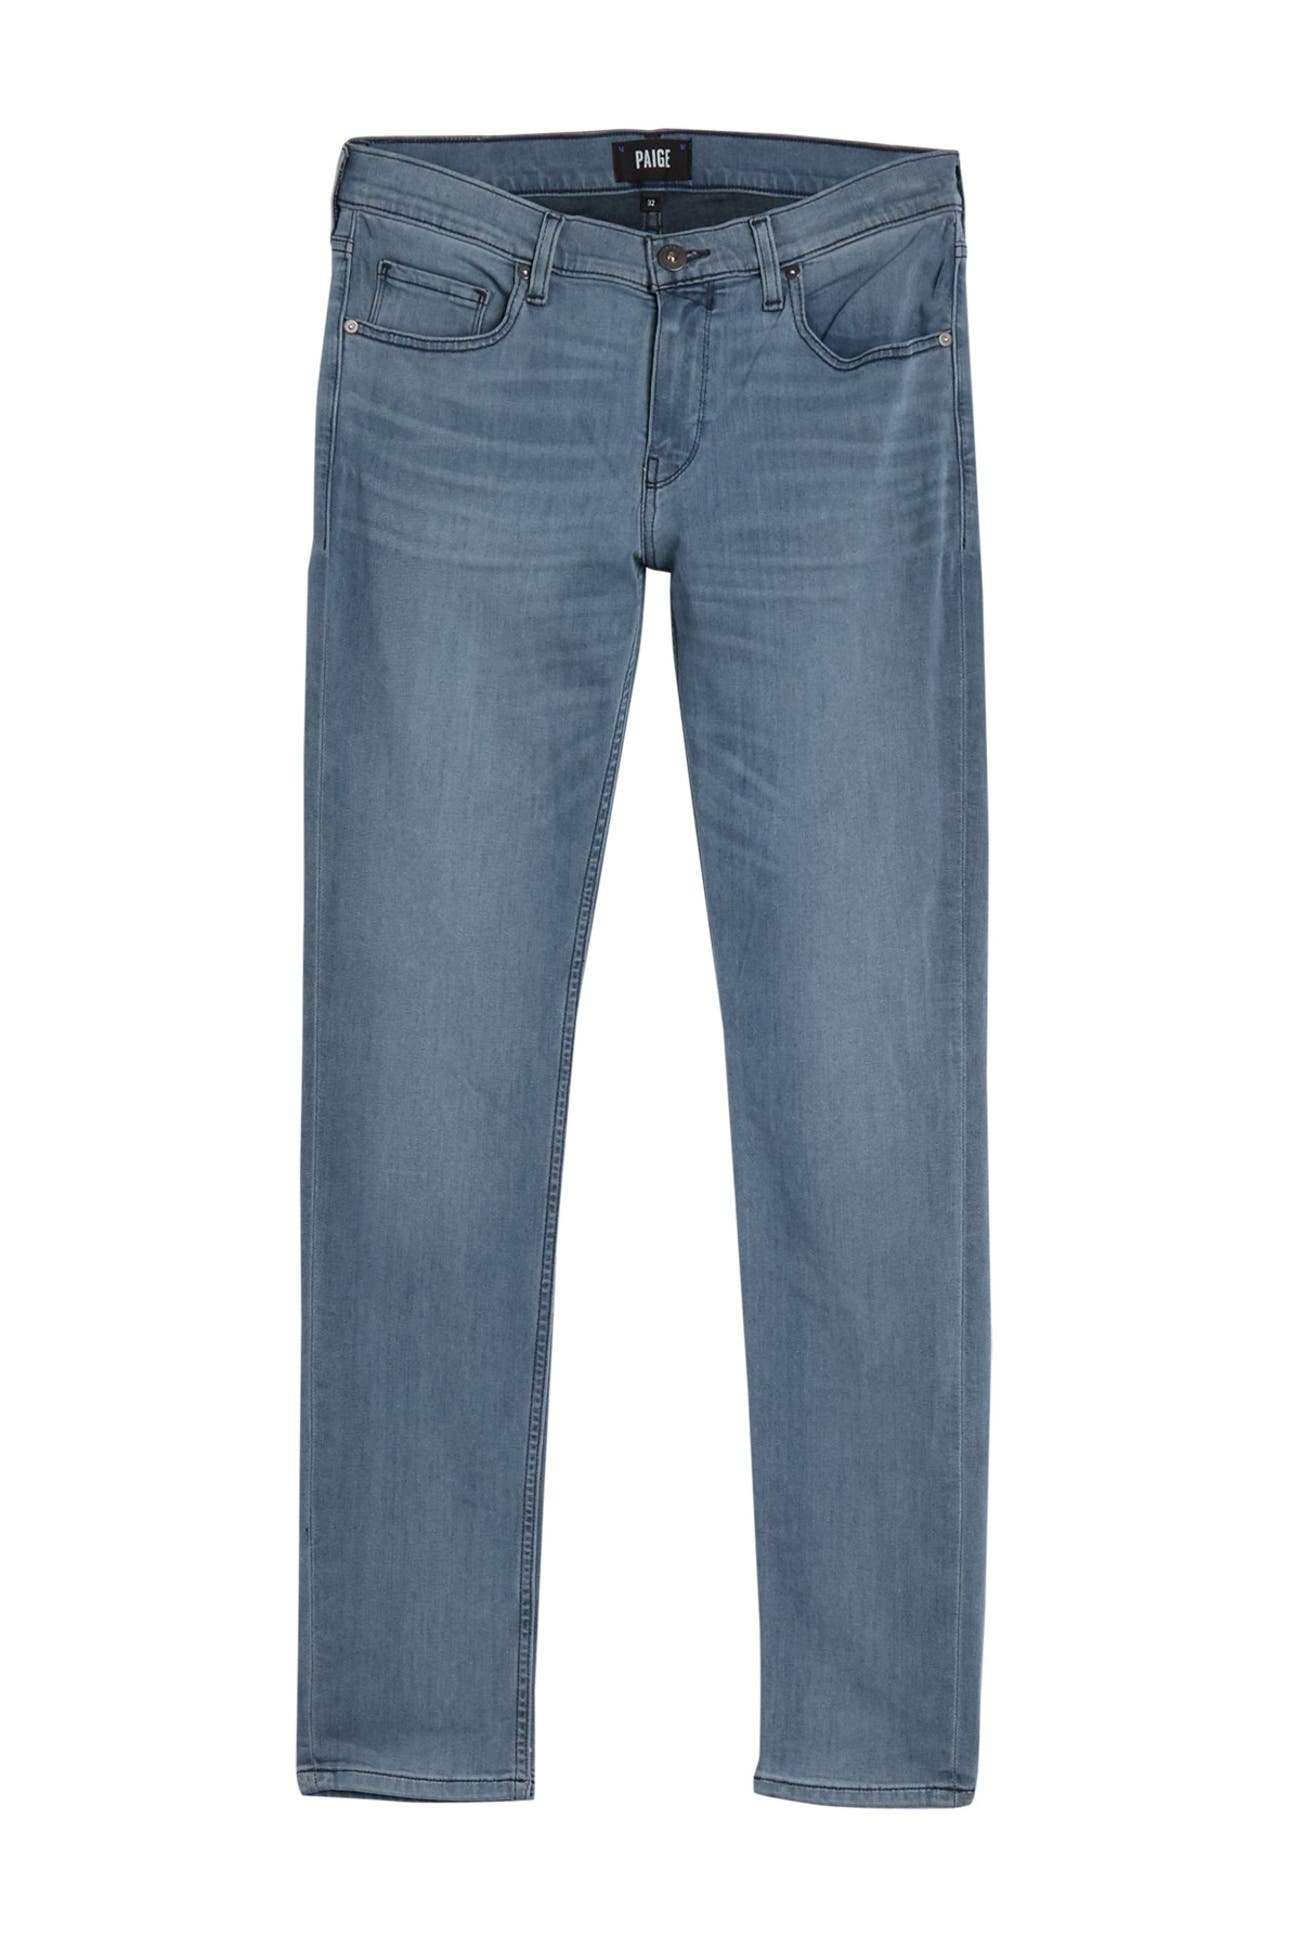 PAIGE | Croft Super Skinny Jeans | Nordstrom Rack